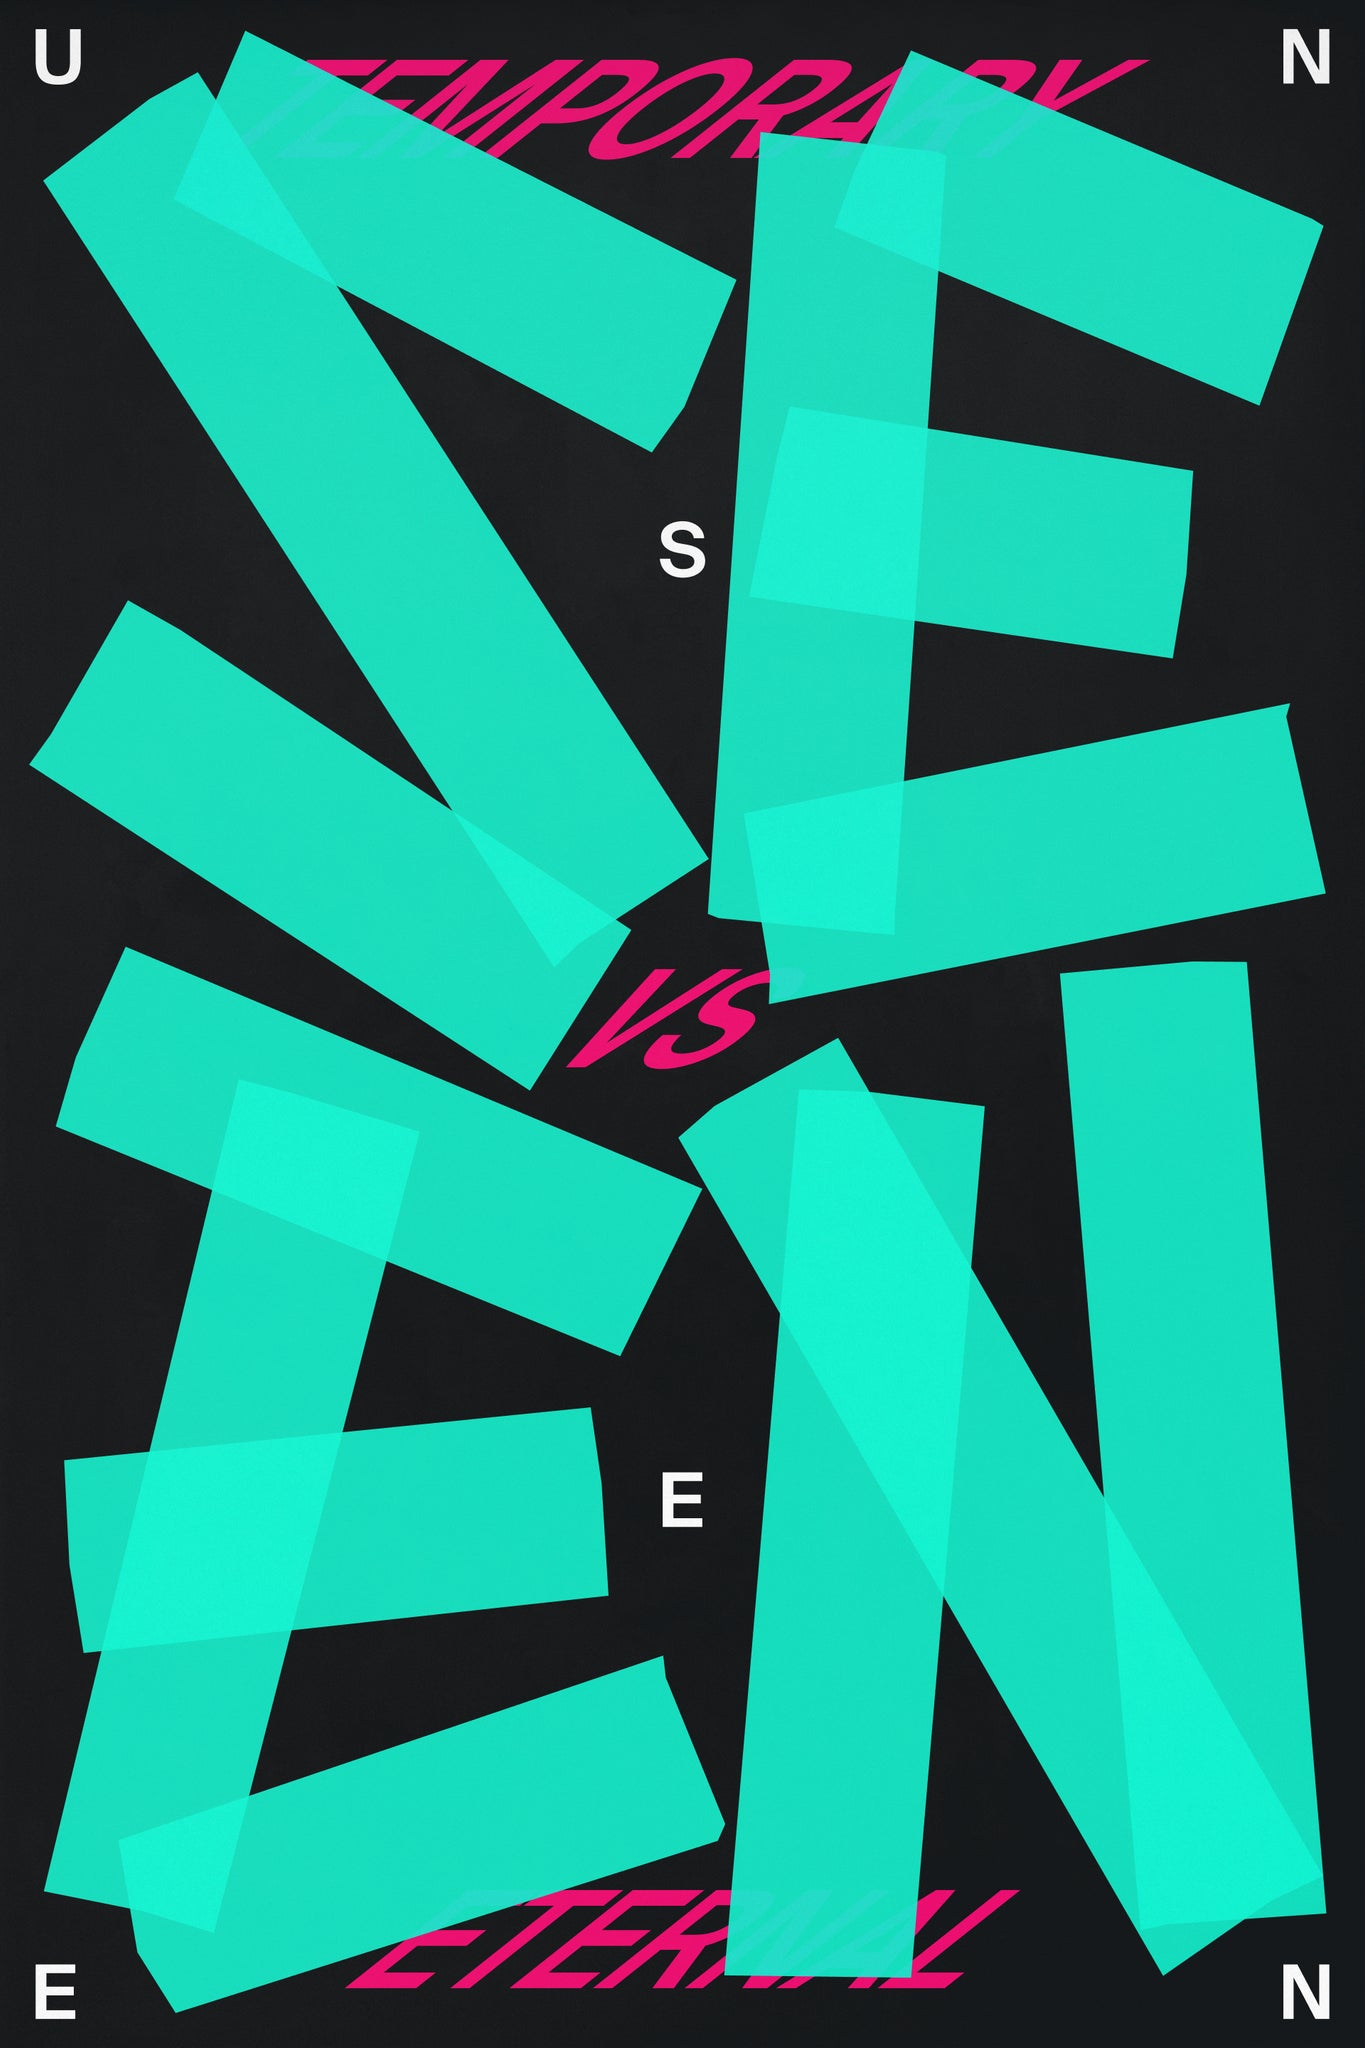 Seen vs. Unseen poster by Xtian Miller via SIGNAL A